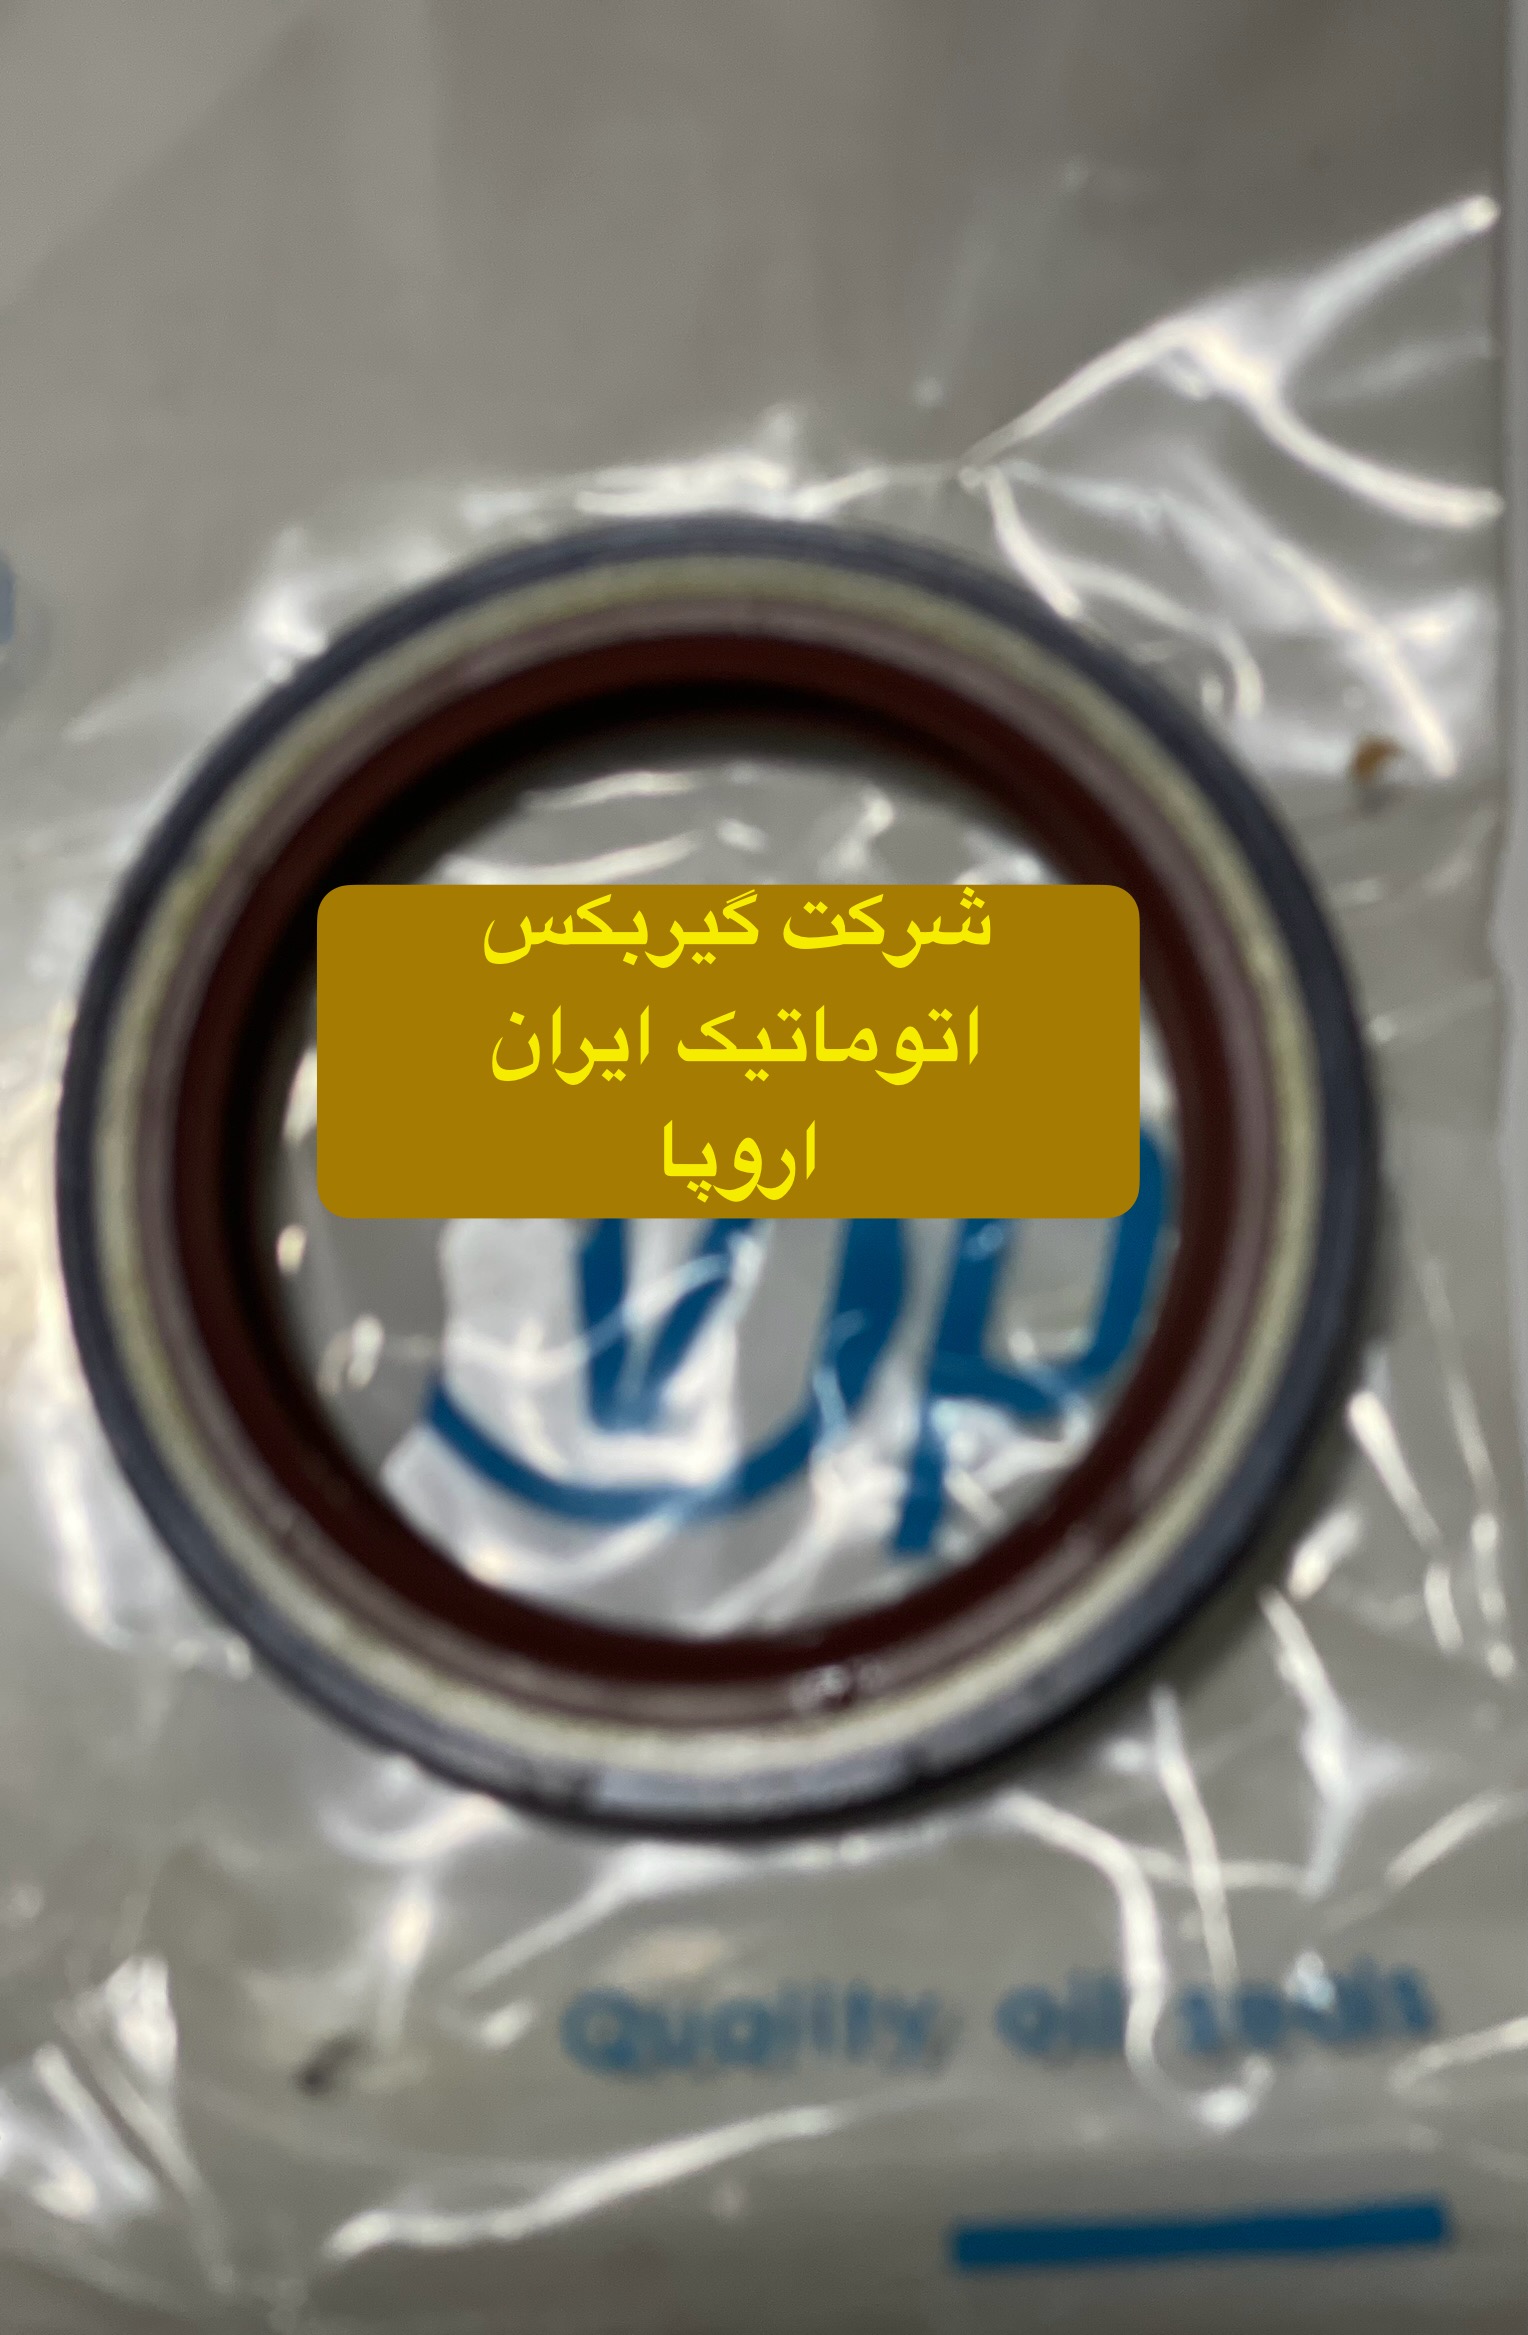 شرکت (تعمیرگاه) گیربکس اتوماتیک ایران اروپا فروش کاسه نمد اویل پمب گیربکس اتوماتیک مگان